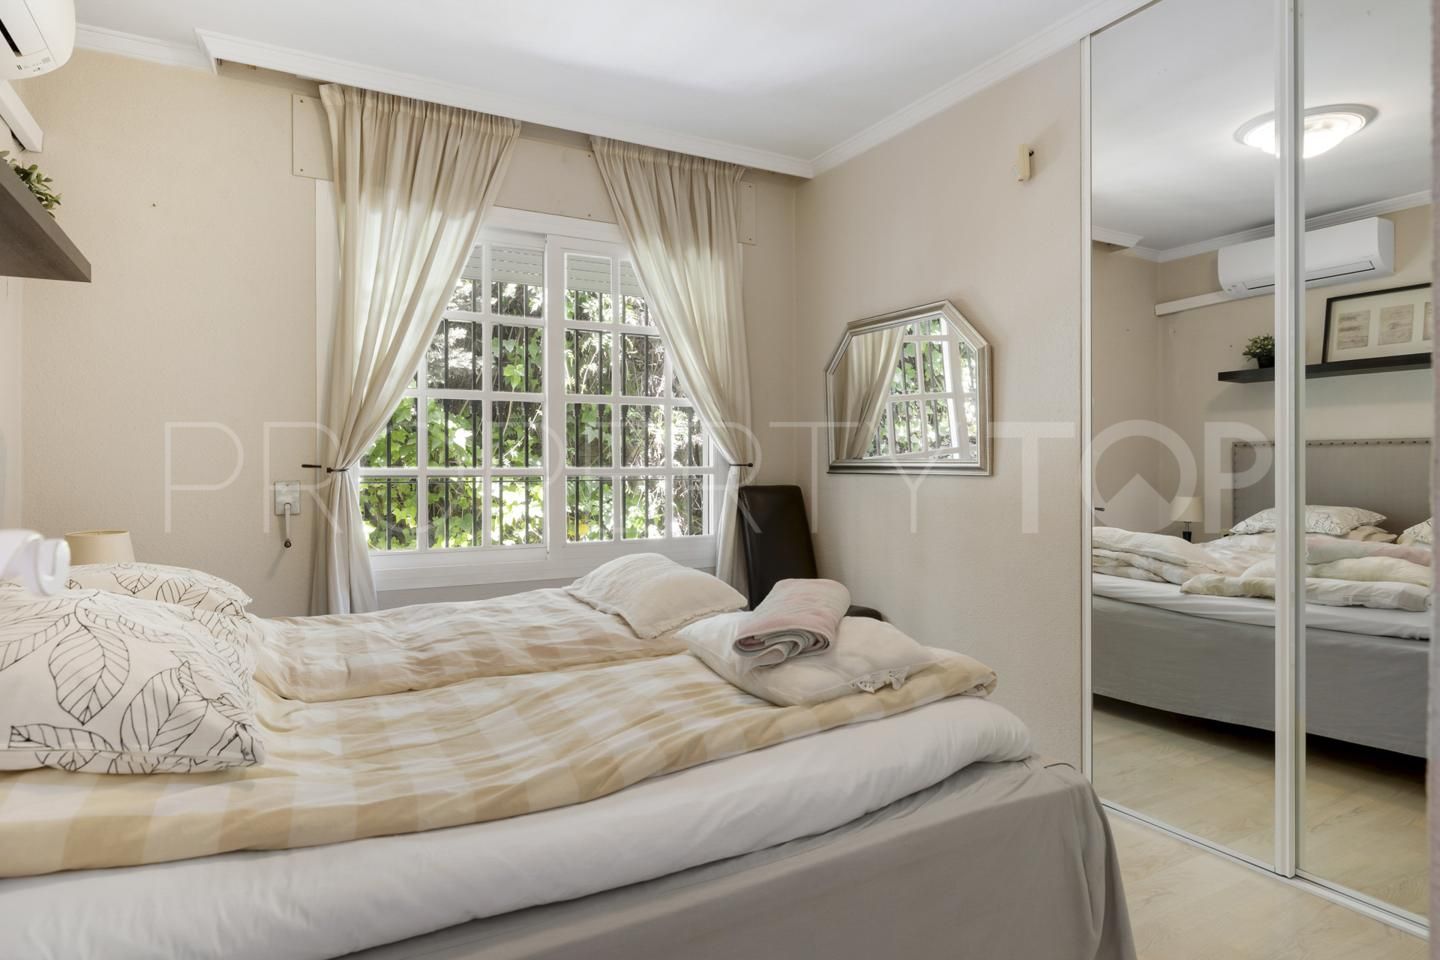 5 bedrooms studio in Las Lomas de Marbella for sale